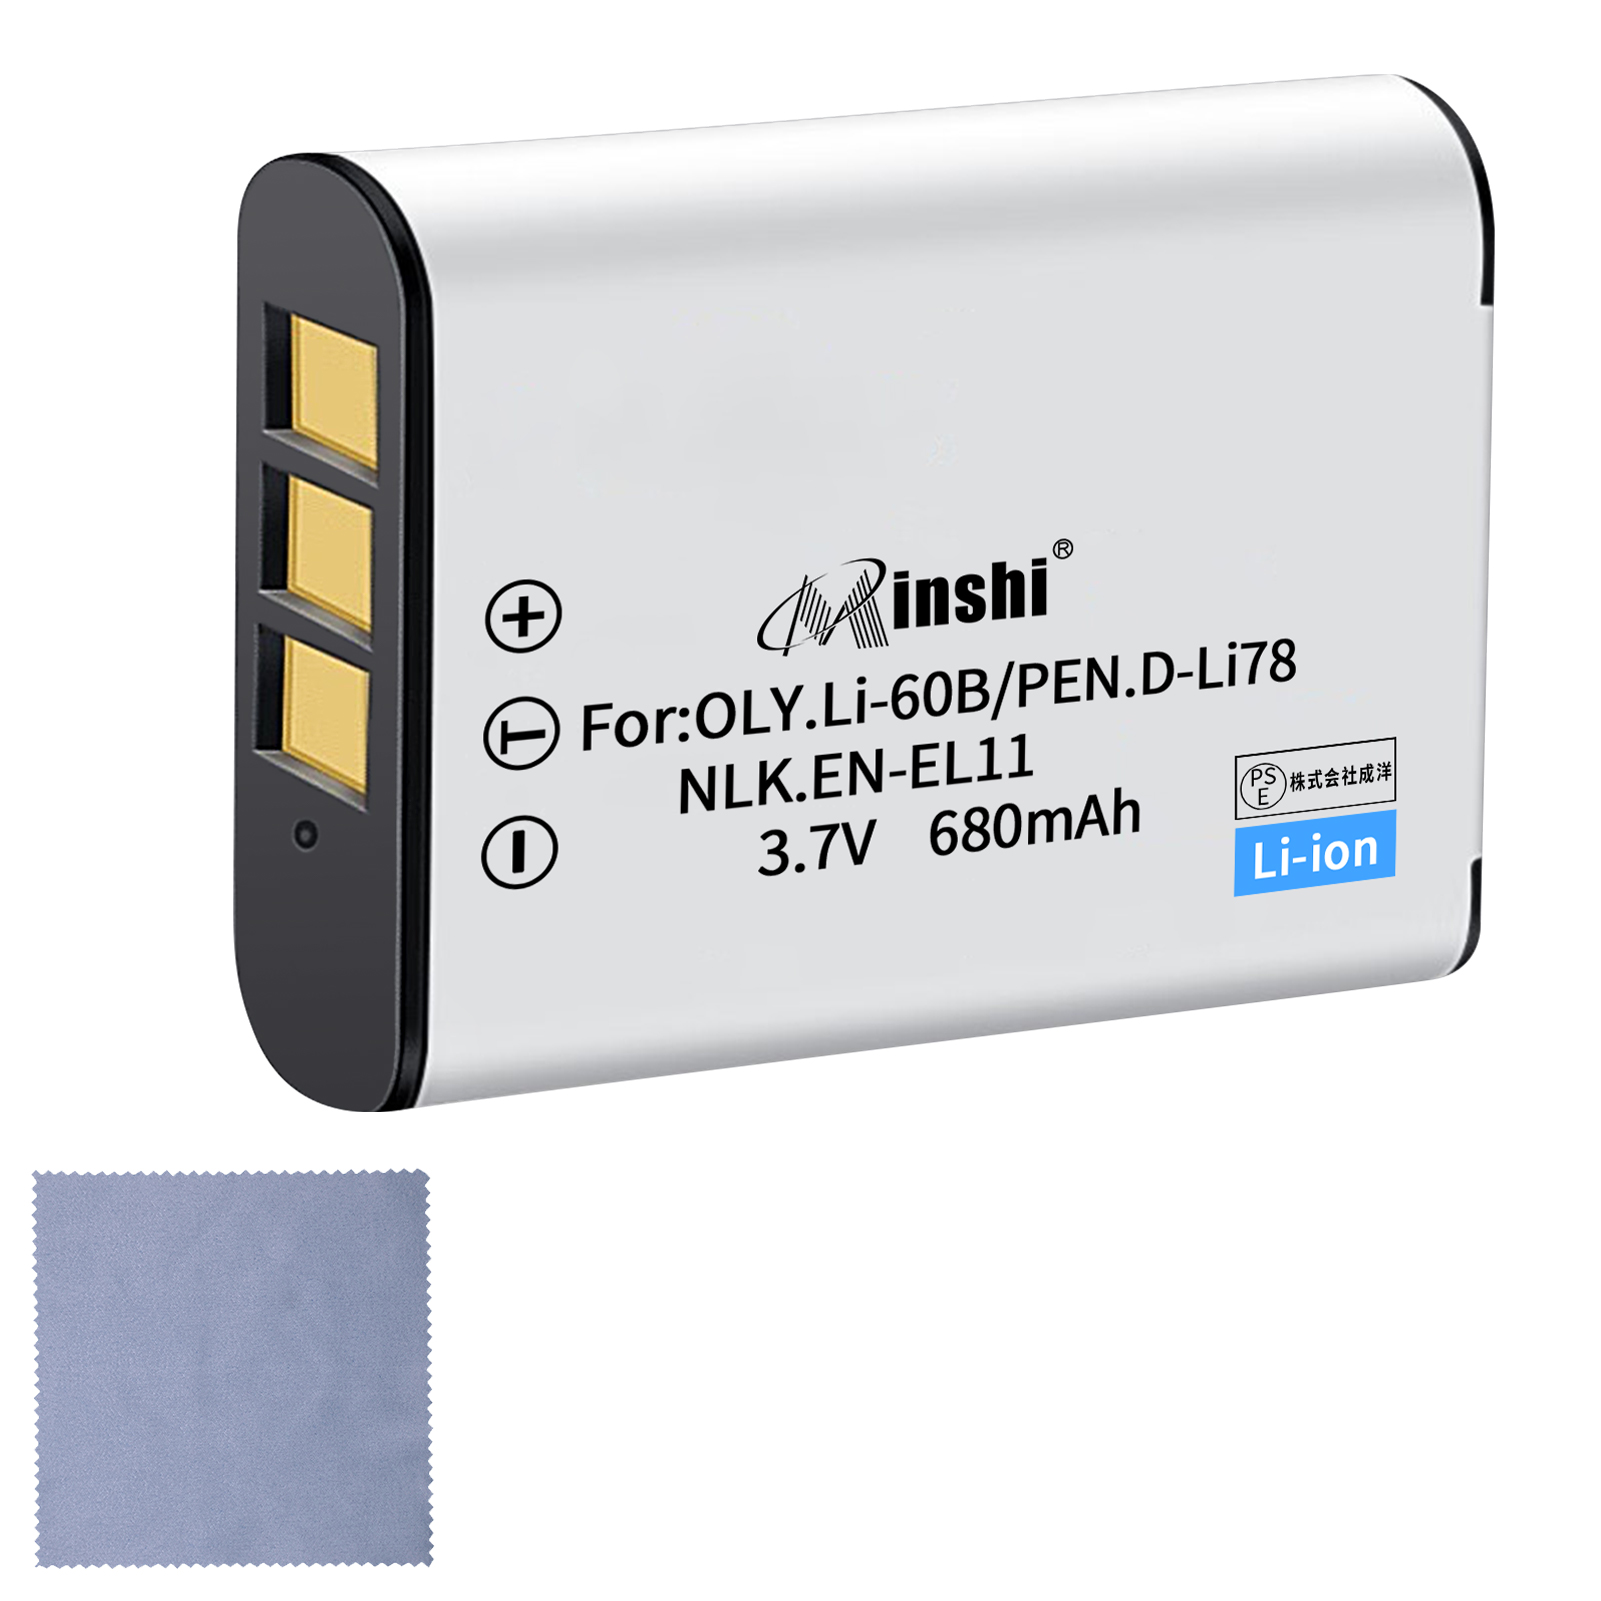 【クロス付き】minshi NIKON Xacti VPC-E10【680mAh 3.7V】PSE認定済 高品質交換用バッテリー オリジナル充電器との互換性がない